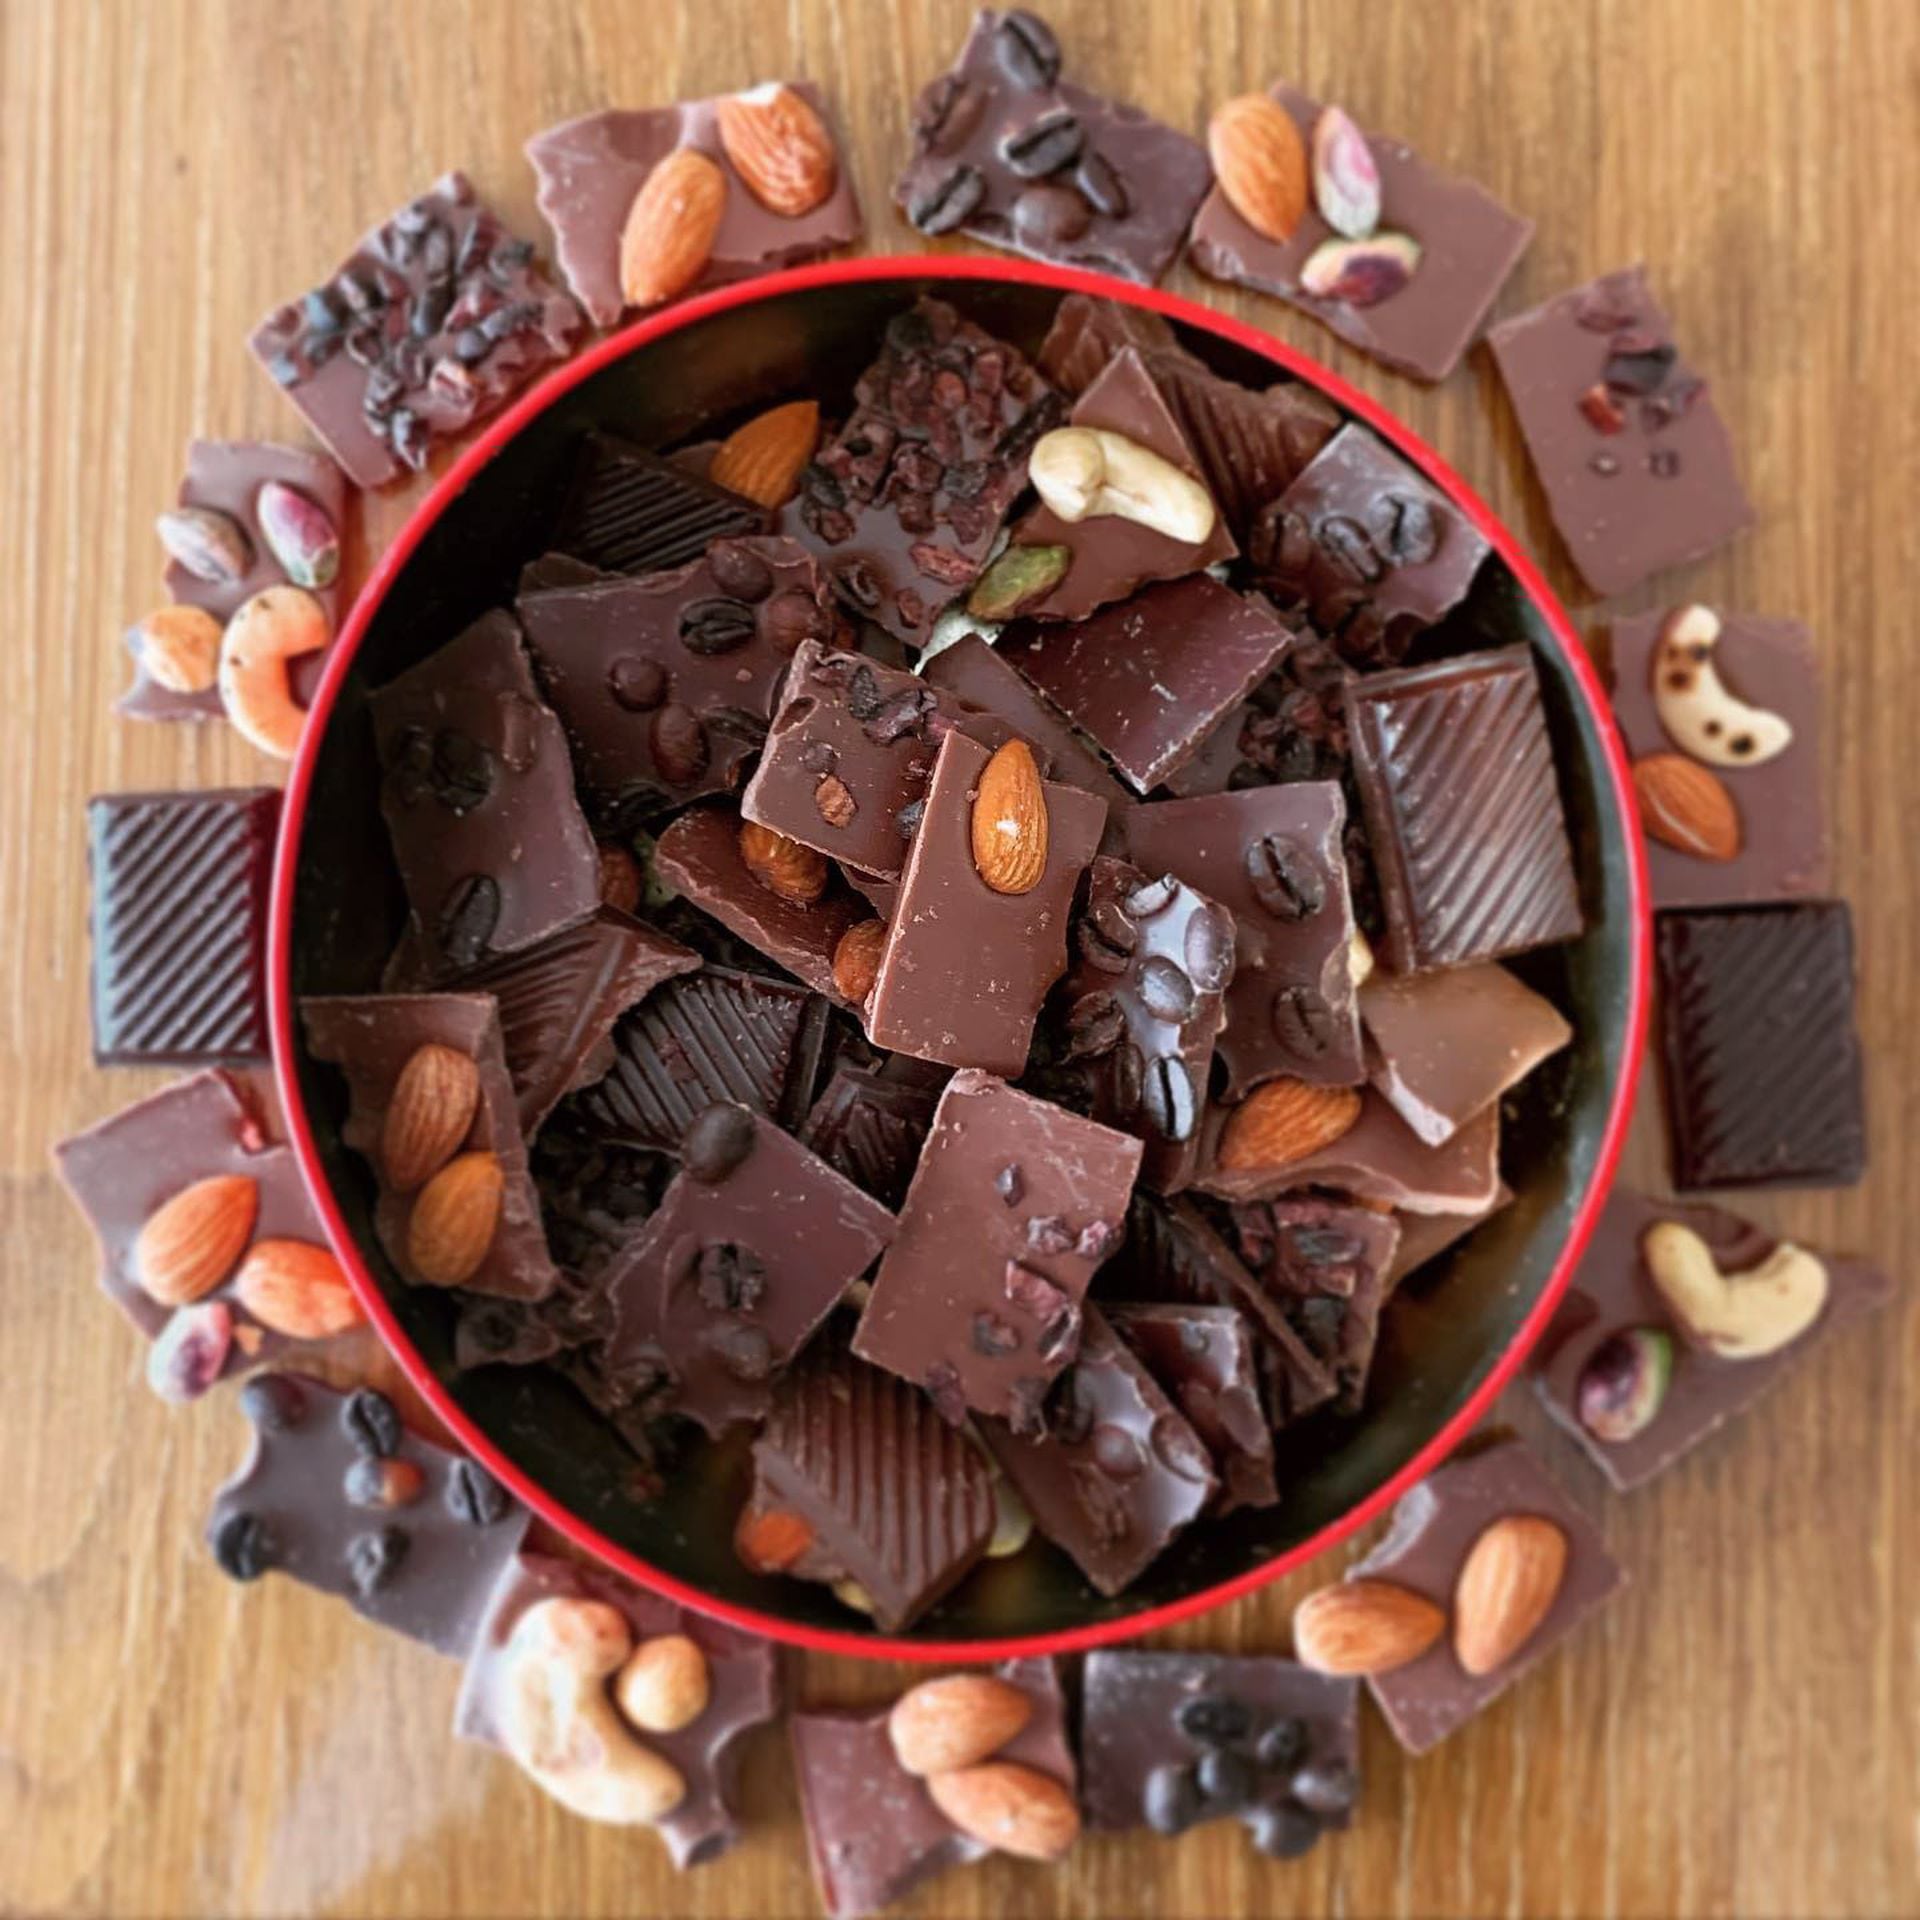 El producto estrella de Frantom son las barras de chocolate (semiamargo, con leche y blanco) con frutos secos y frutos rojos.